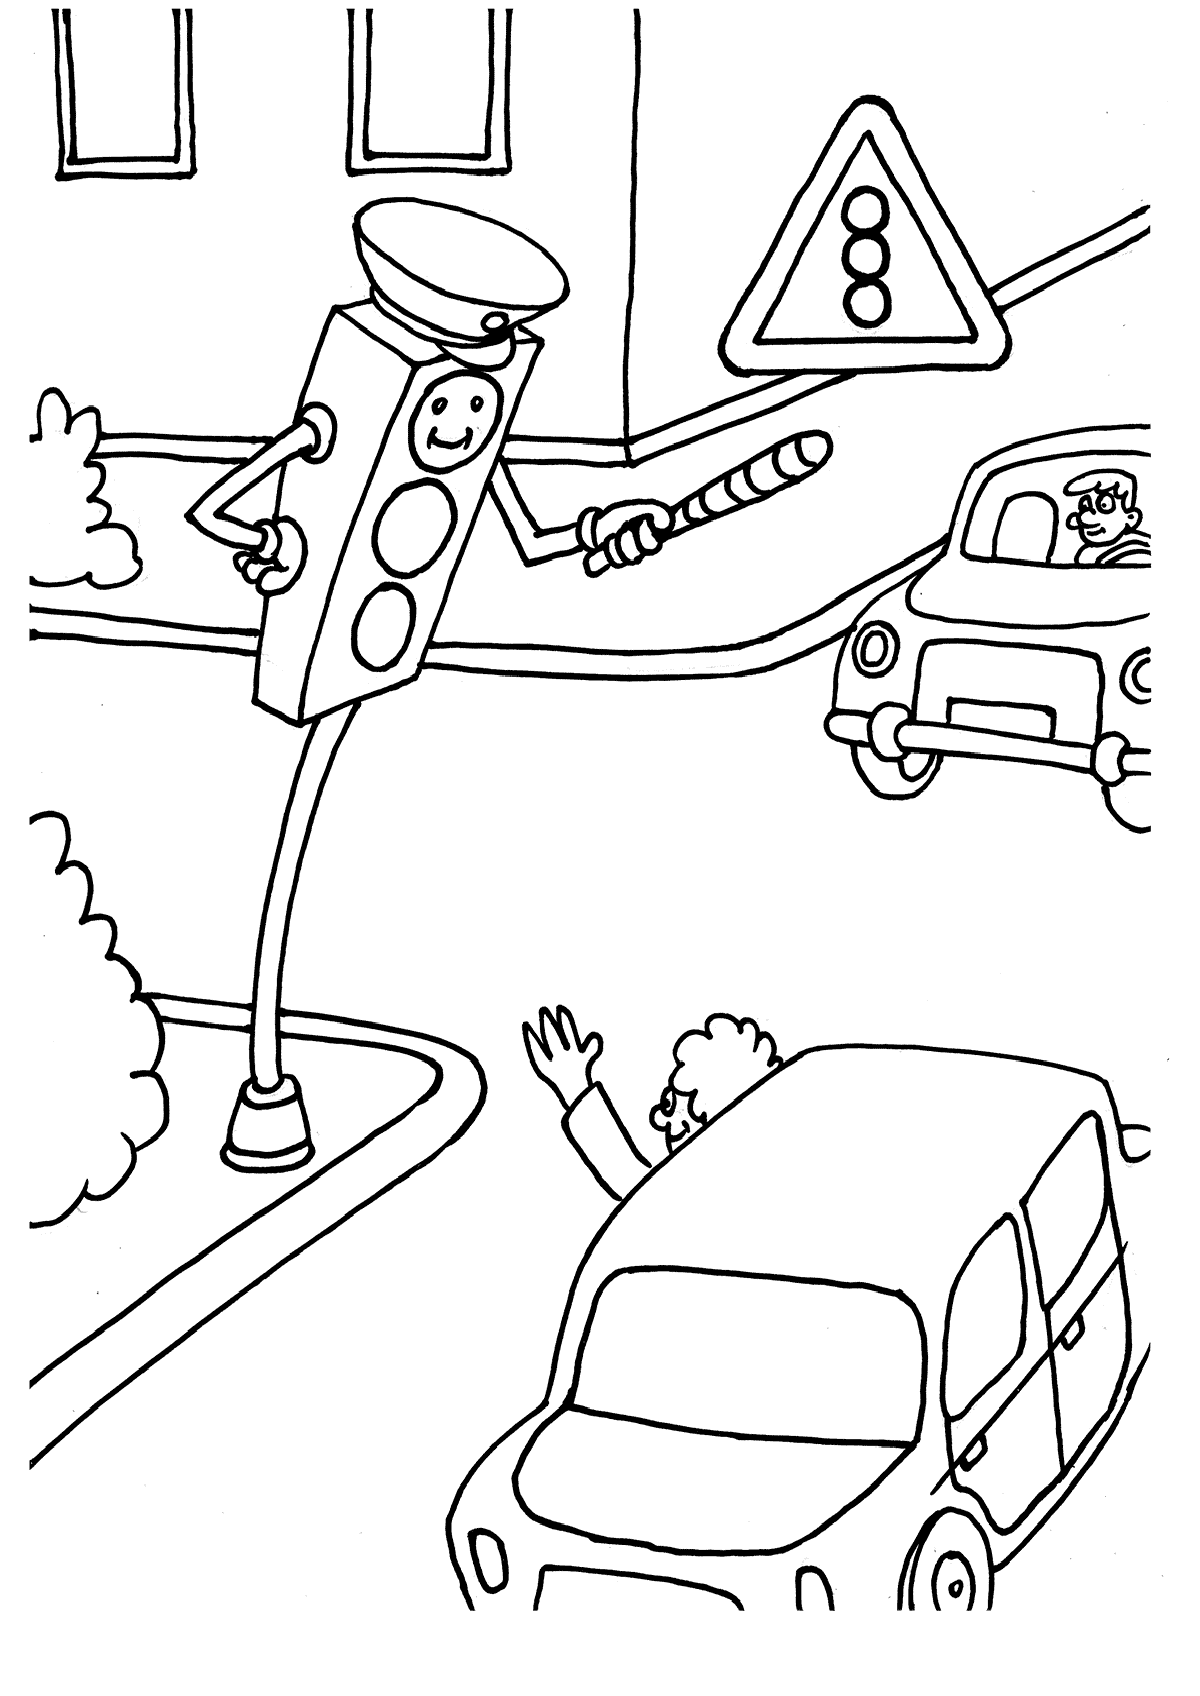 Разукрашки Правило Дорожного Движения